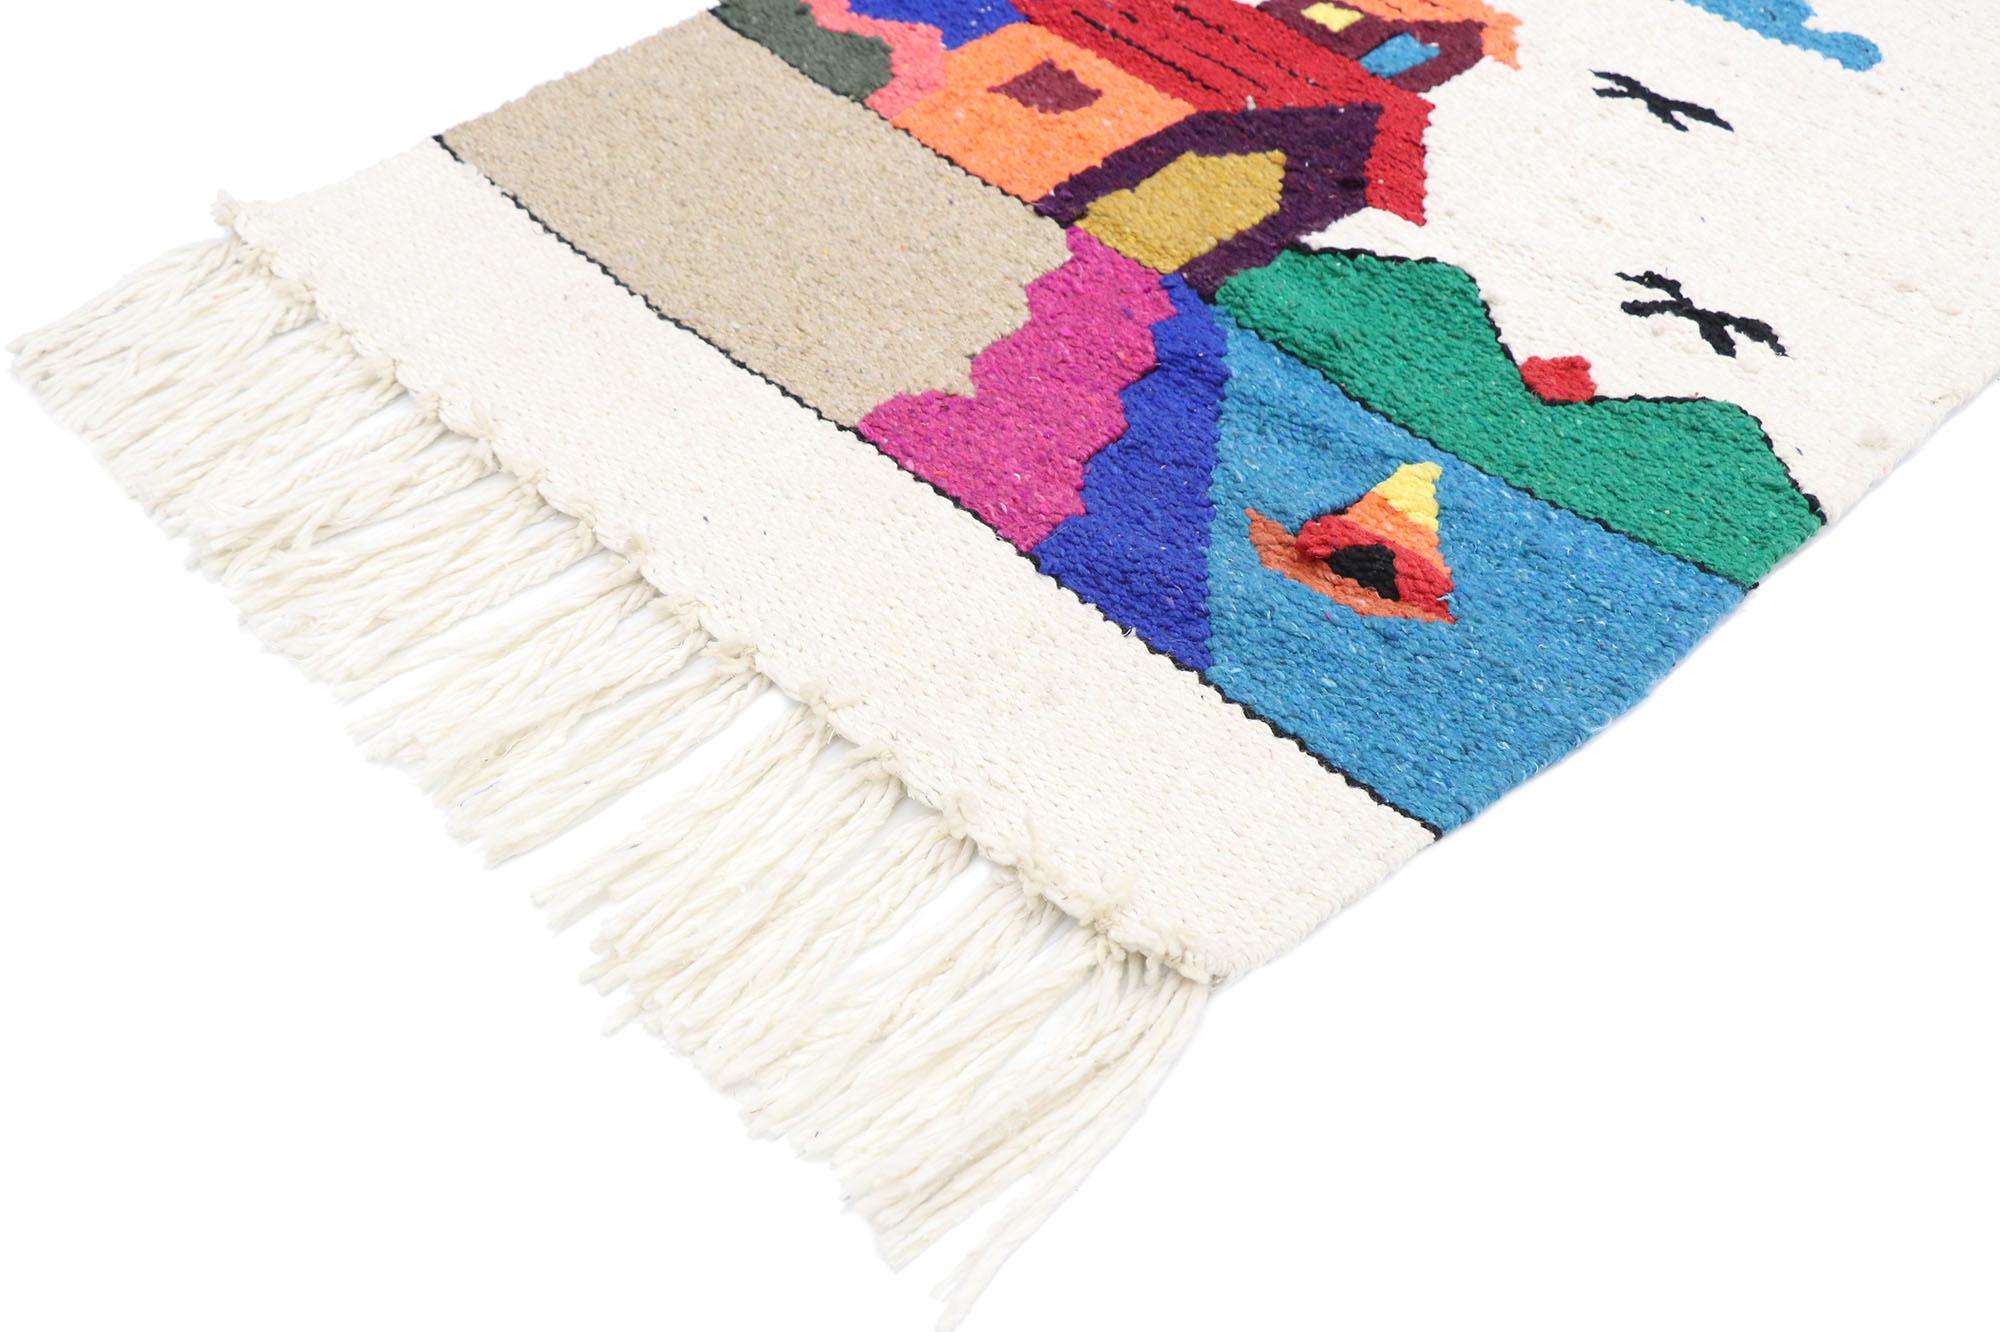 77774 vintage mexikanischer Wandteppich mit Boho Chic Folk Art Stil 02'05 x 03'02. Voller winziger Details und einem kühnen, ausdrucksstarken Design, kombiniert mit leuchtenden Farben und einem Stammesstil, ist dieser handgewebte mexikanische